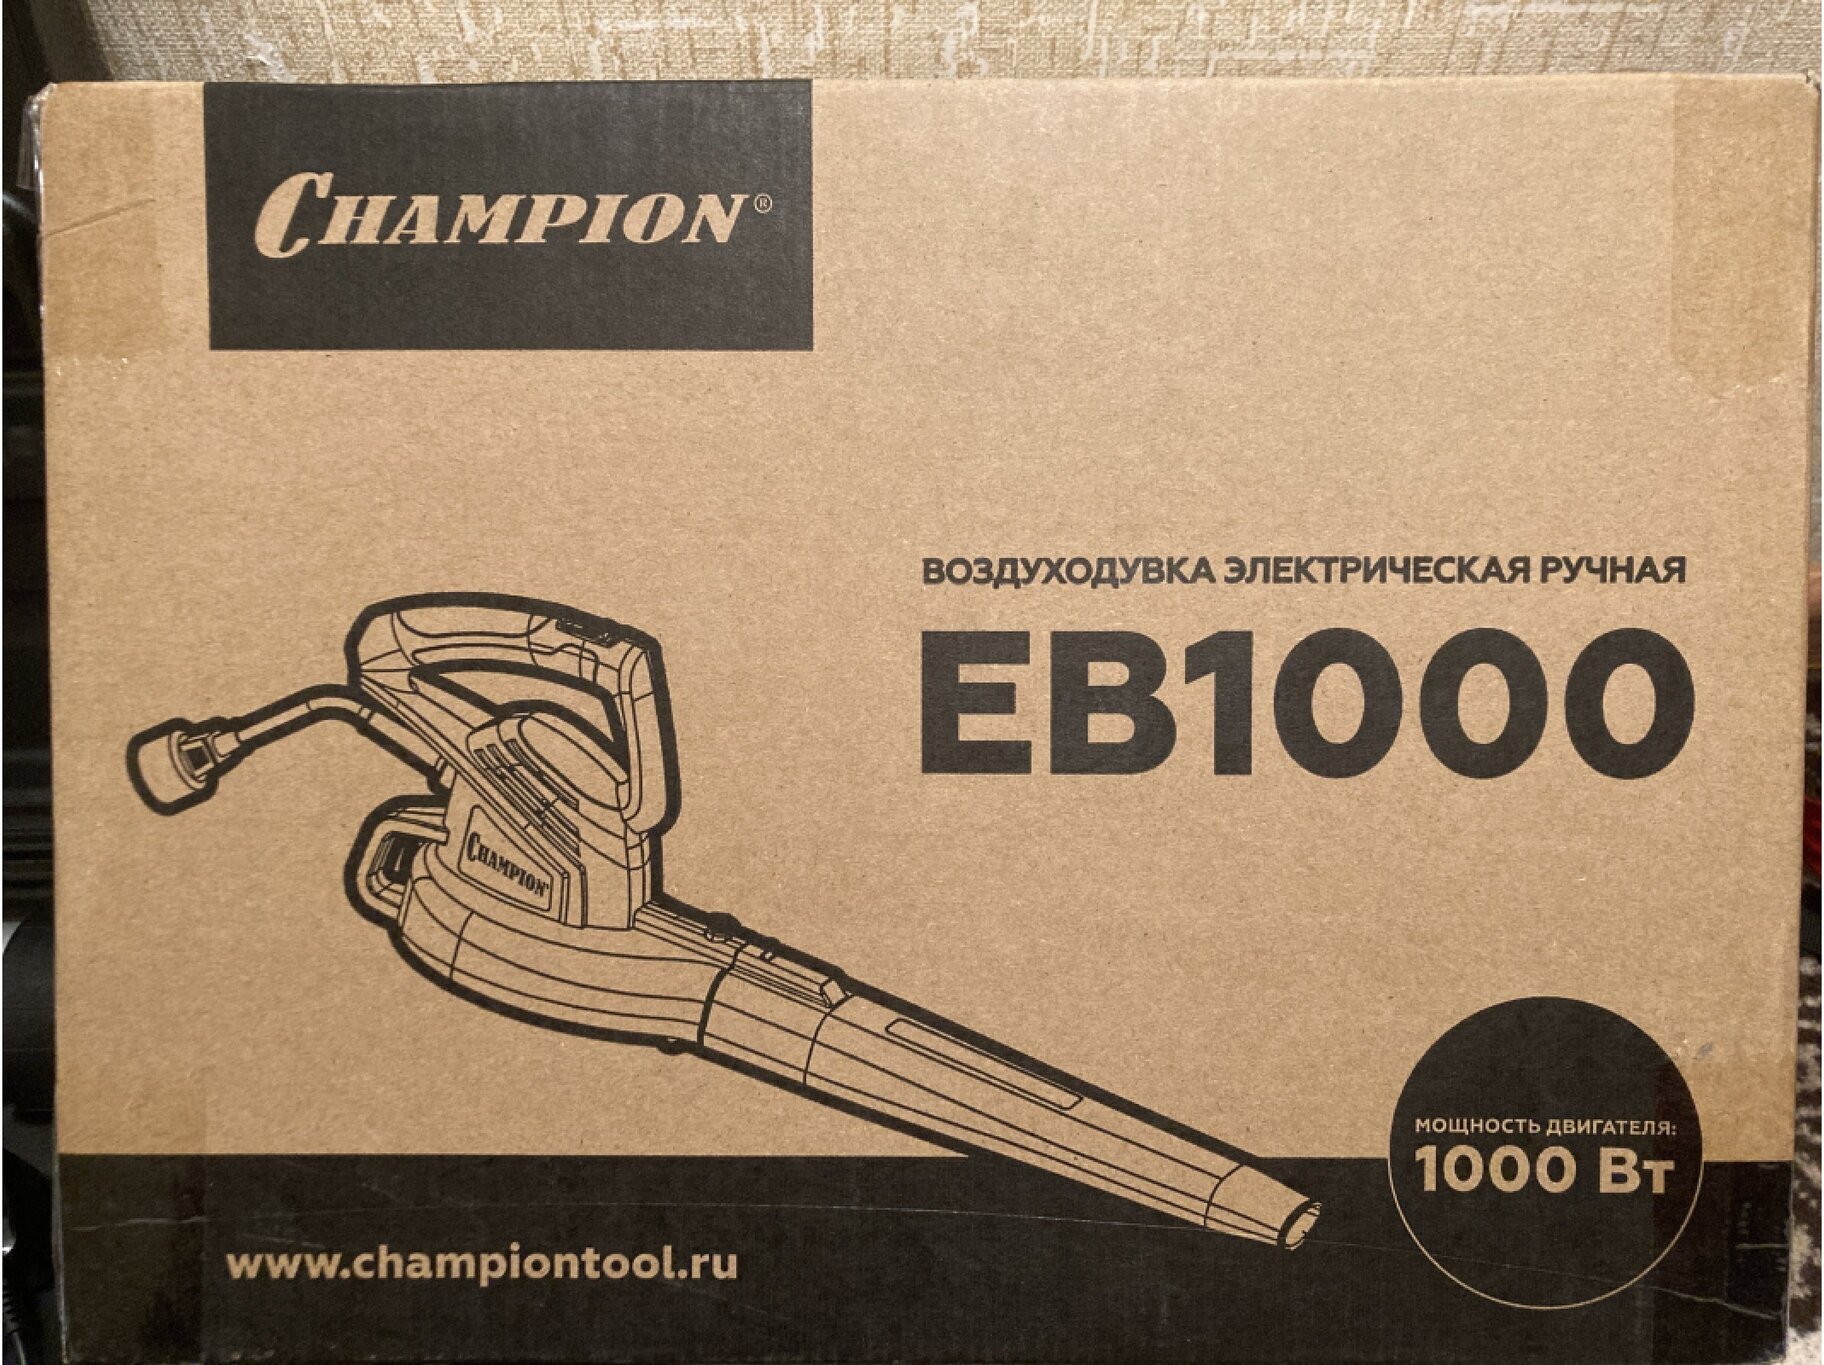 Электрическая воздуходувка CHAMPION EB1000 1000 Вт